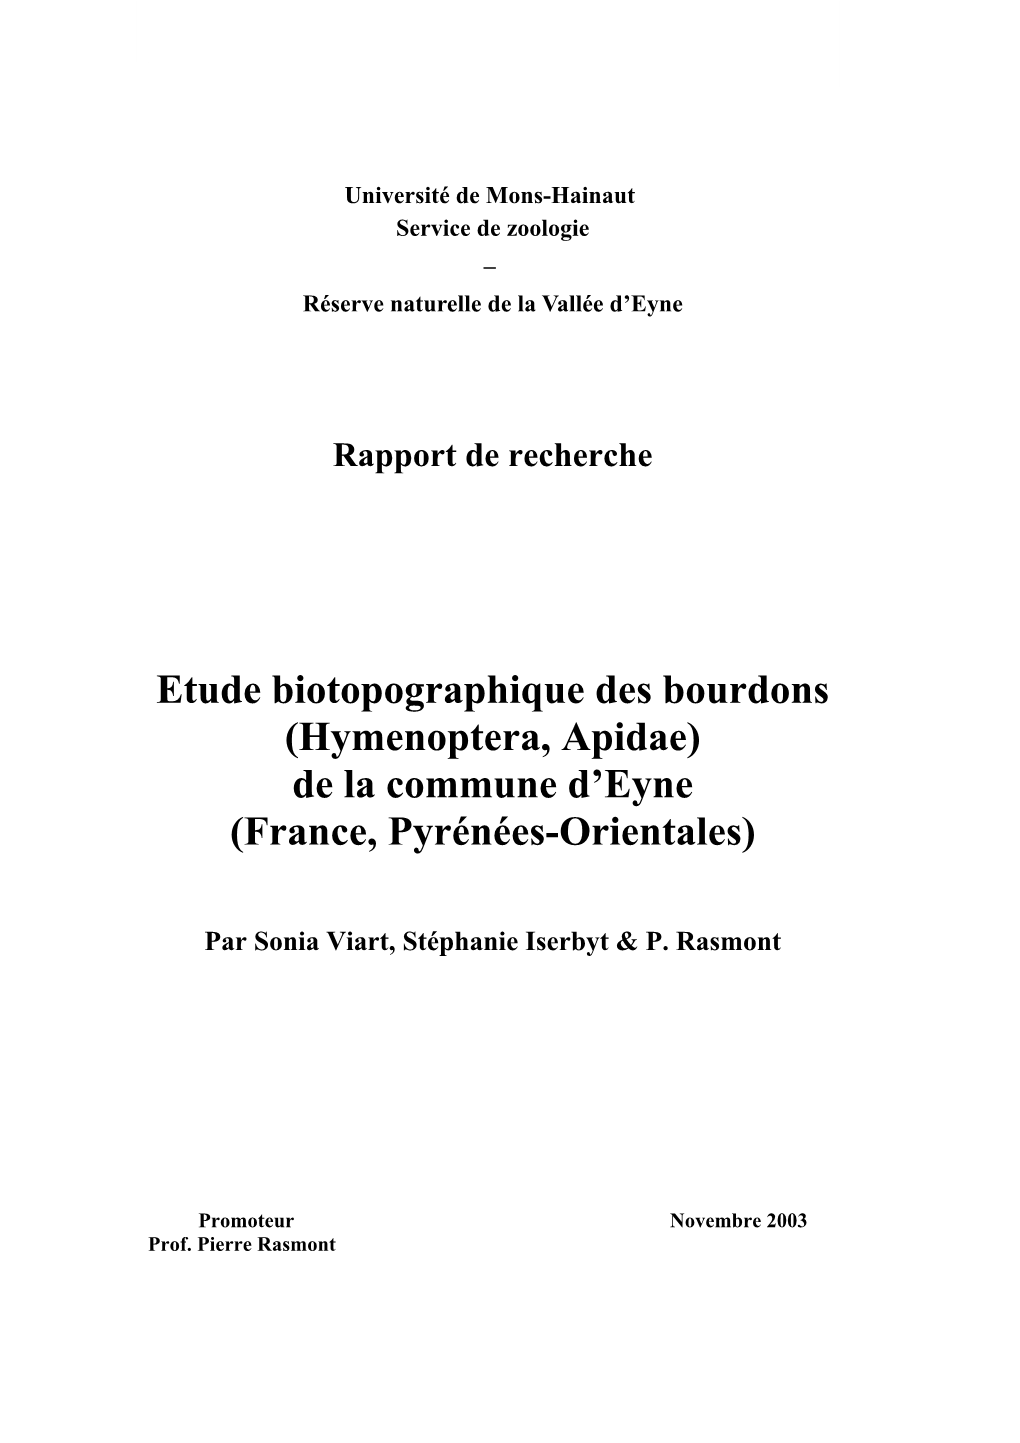 Etude Biotopographique Des Bourdons (Hymenoptera, Apidae) De La Commune D’Eyne (France, Pyrénées-Orientales)